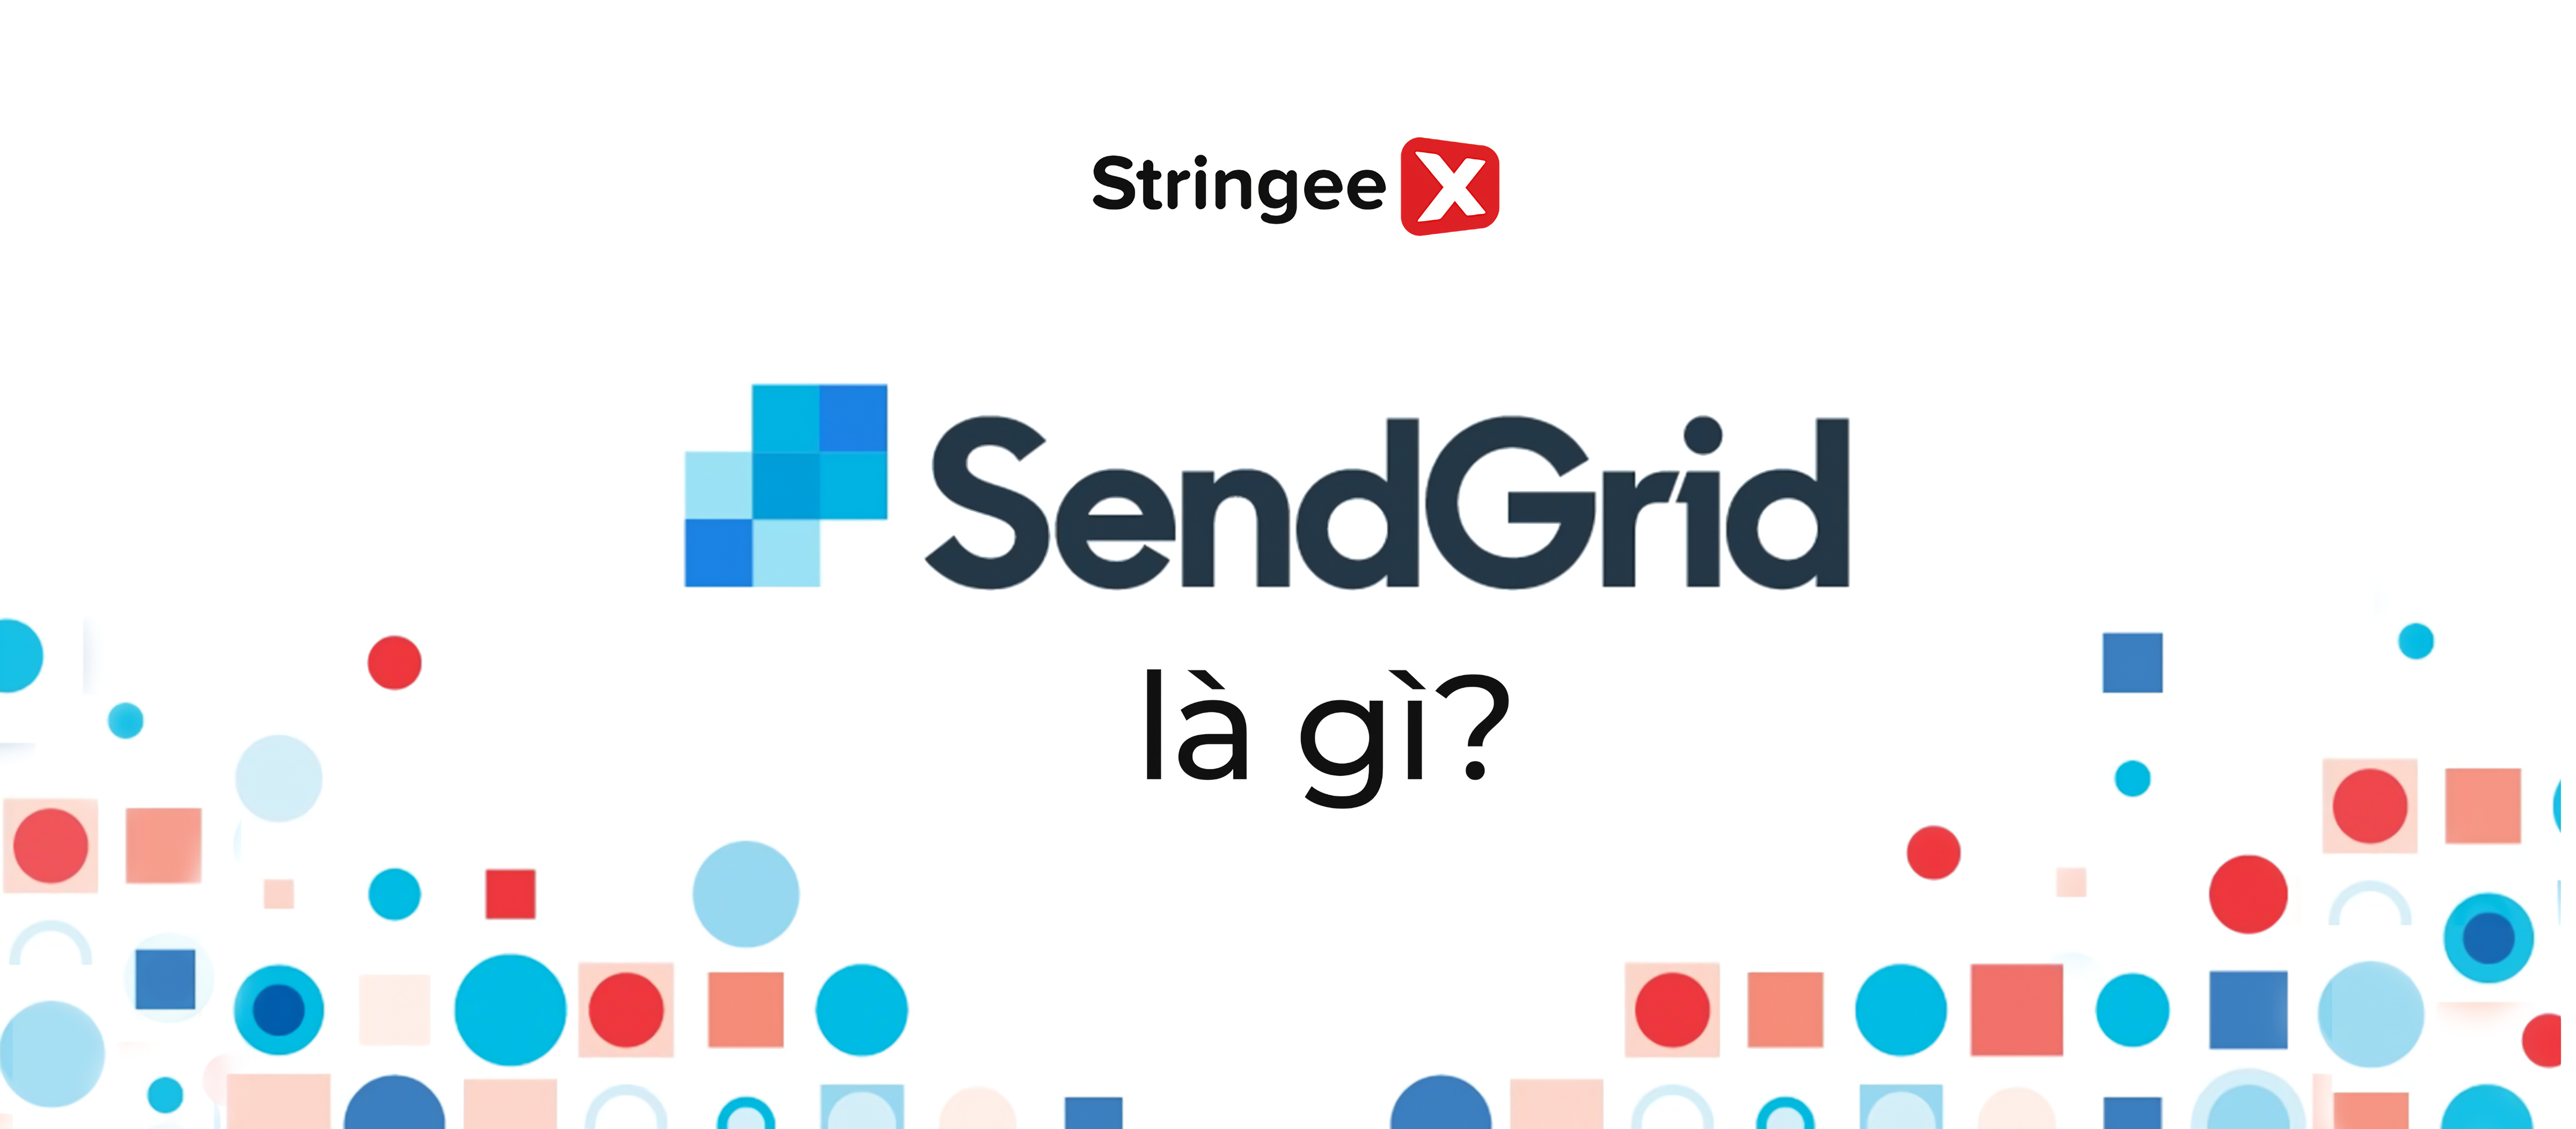 Sendgrid là gì? Cách sử dụng Sendgrid hiệu quả trong Email Marketing